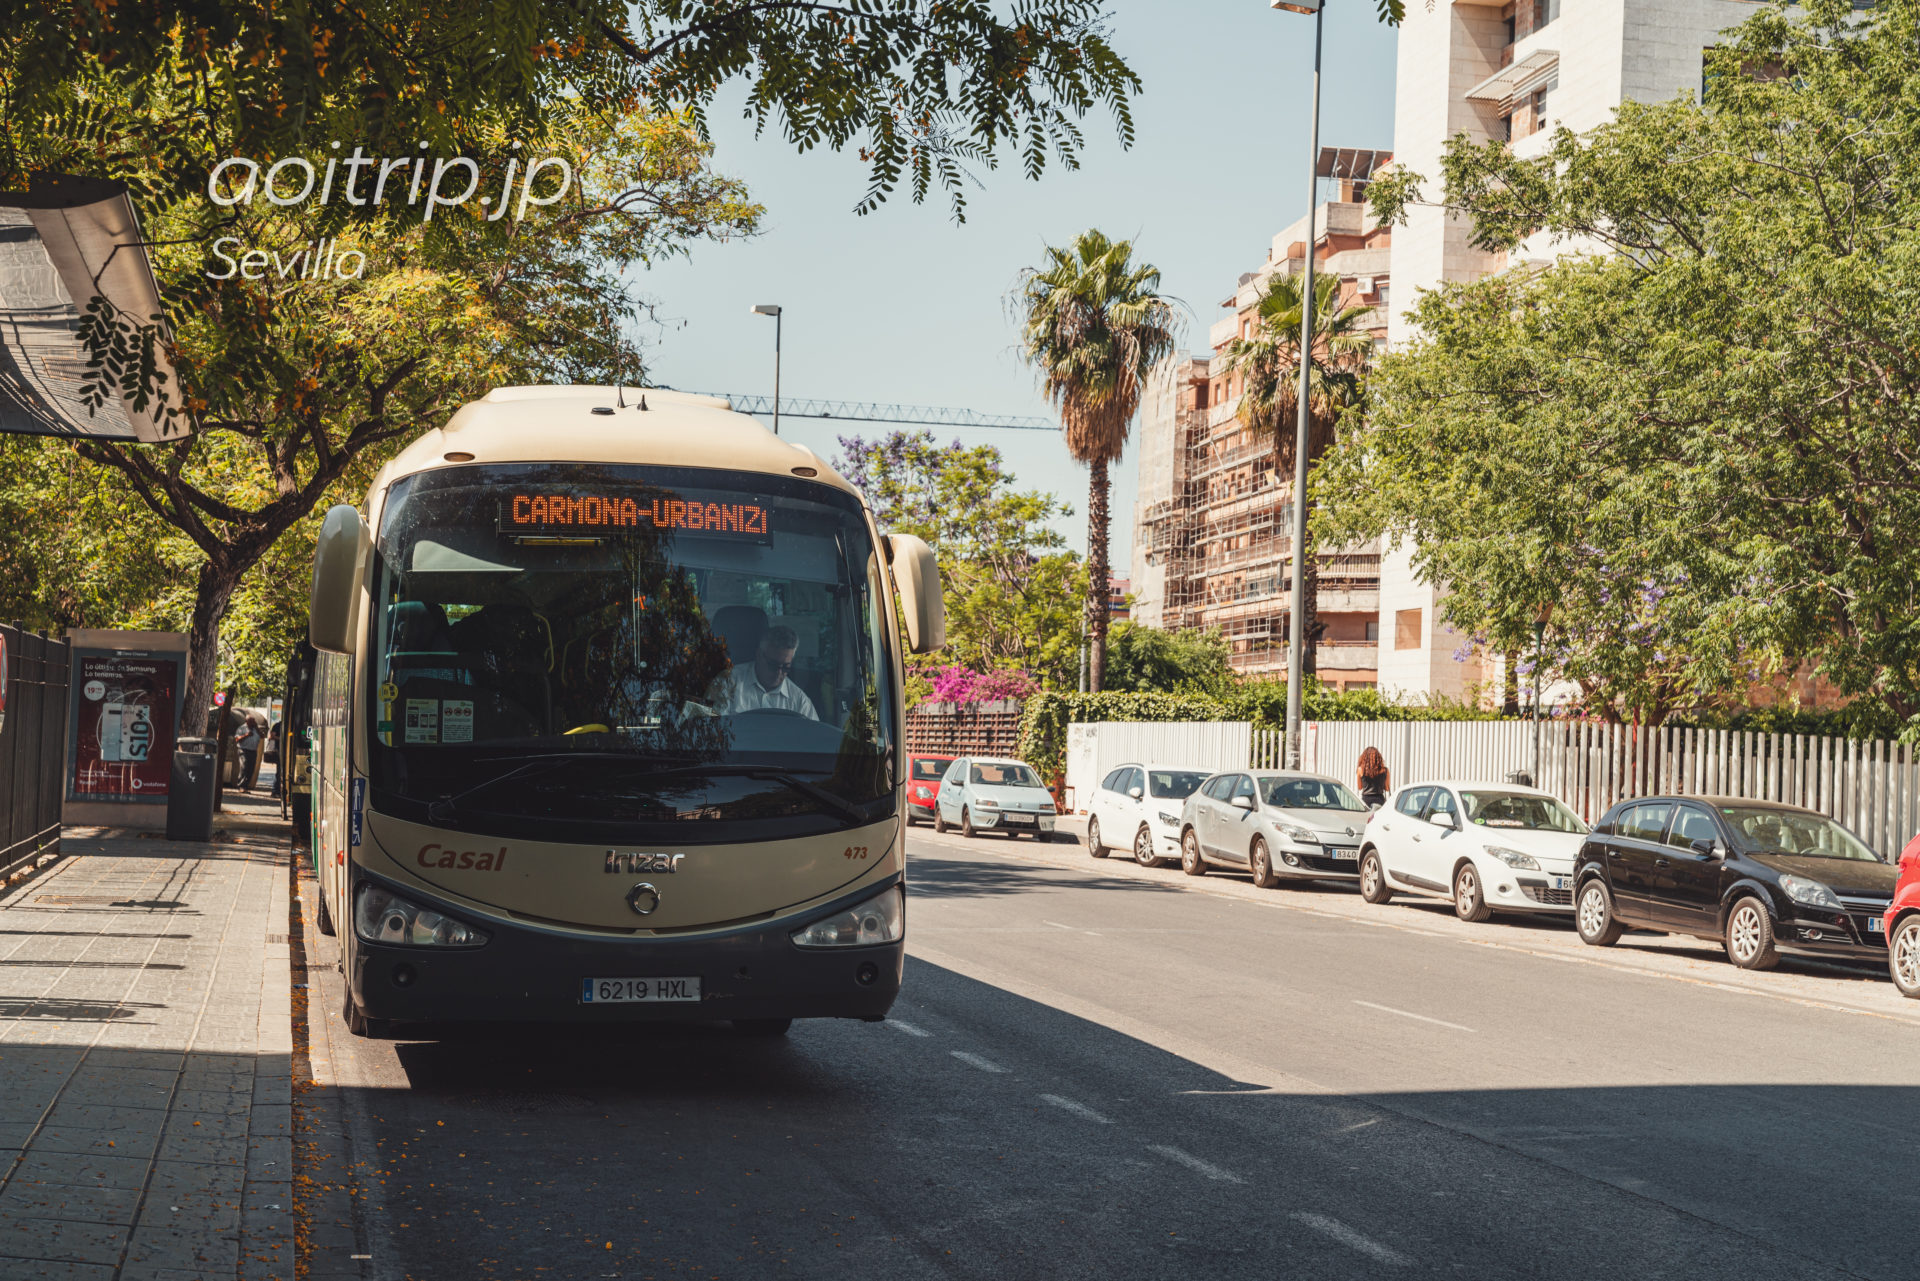 M-124 Sevilla - Carmonaのバス（セビージャ - カルモナ）